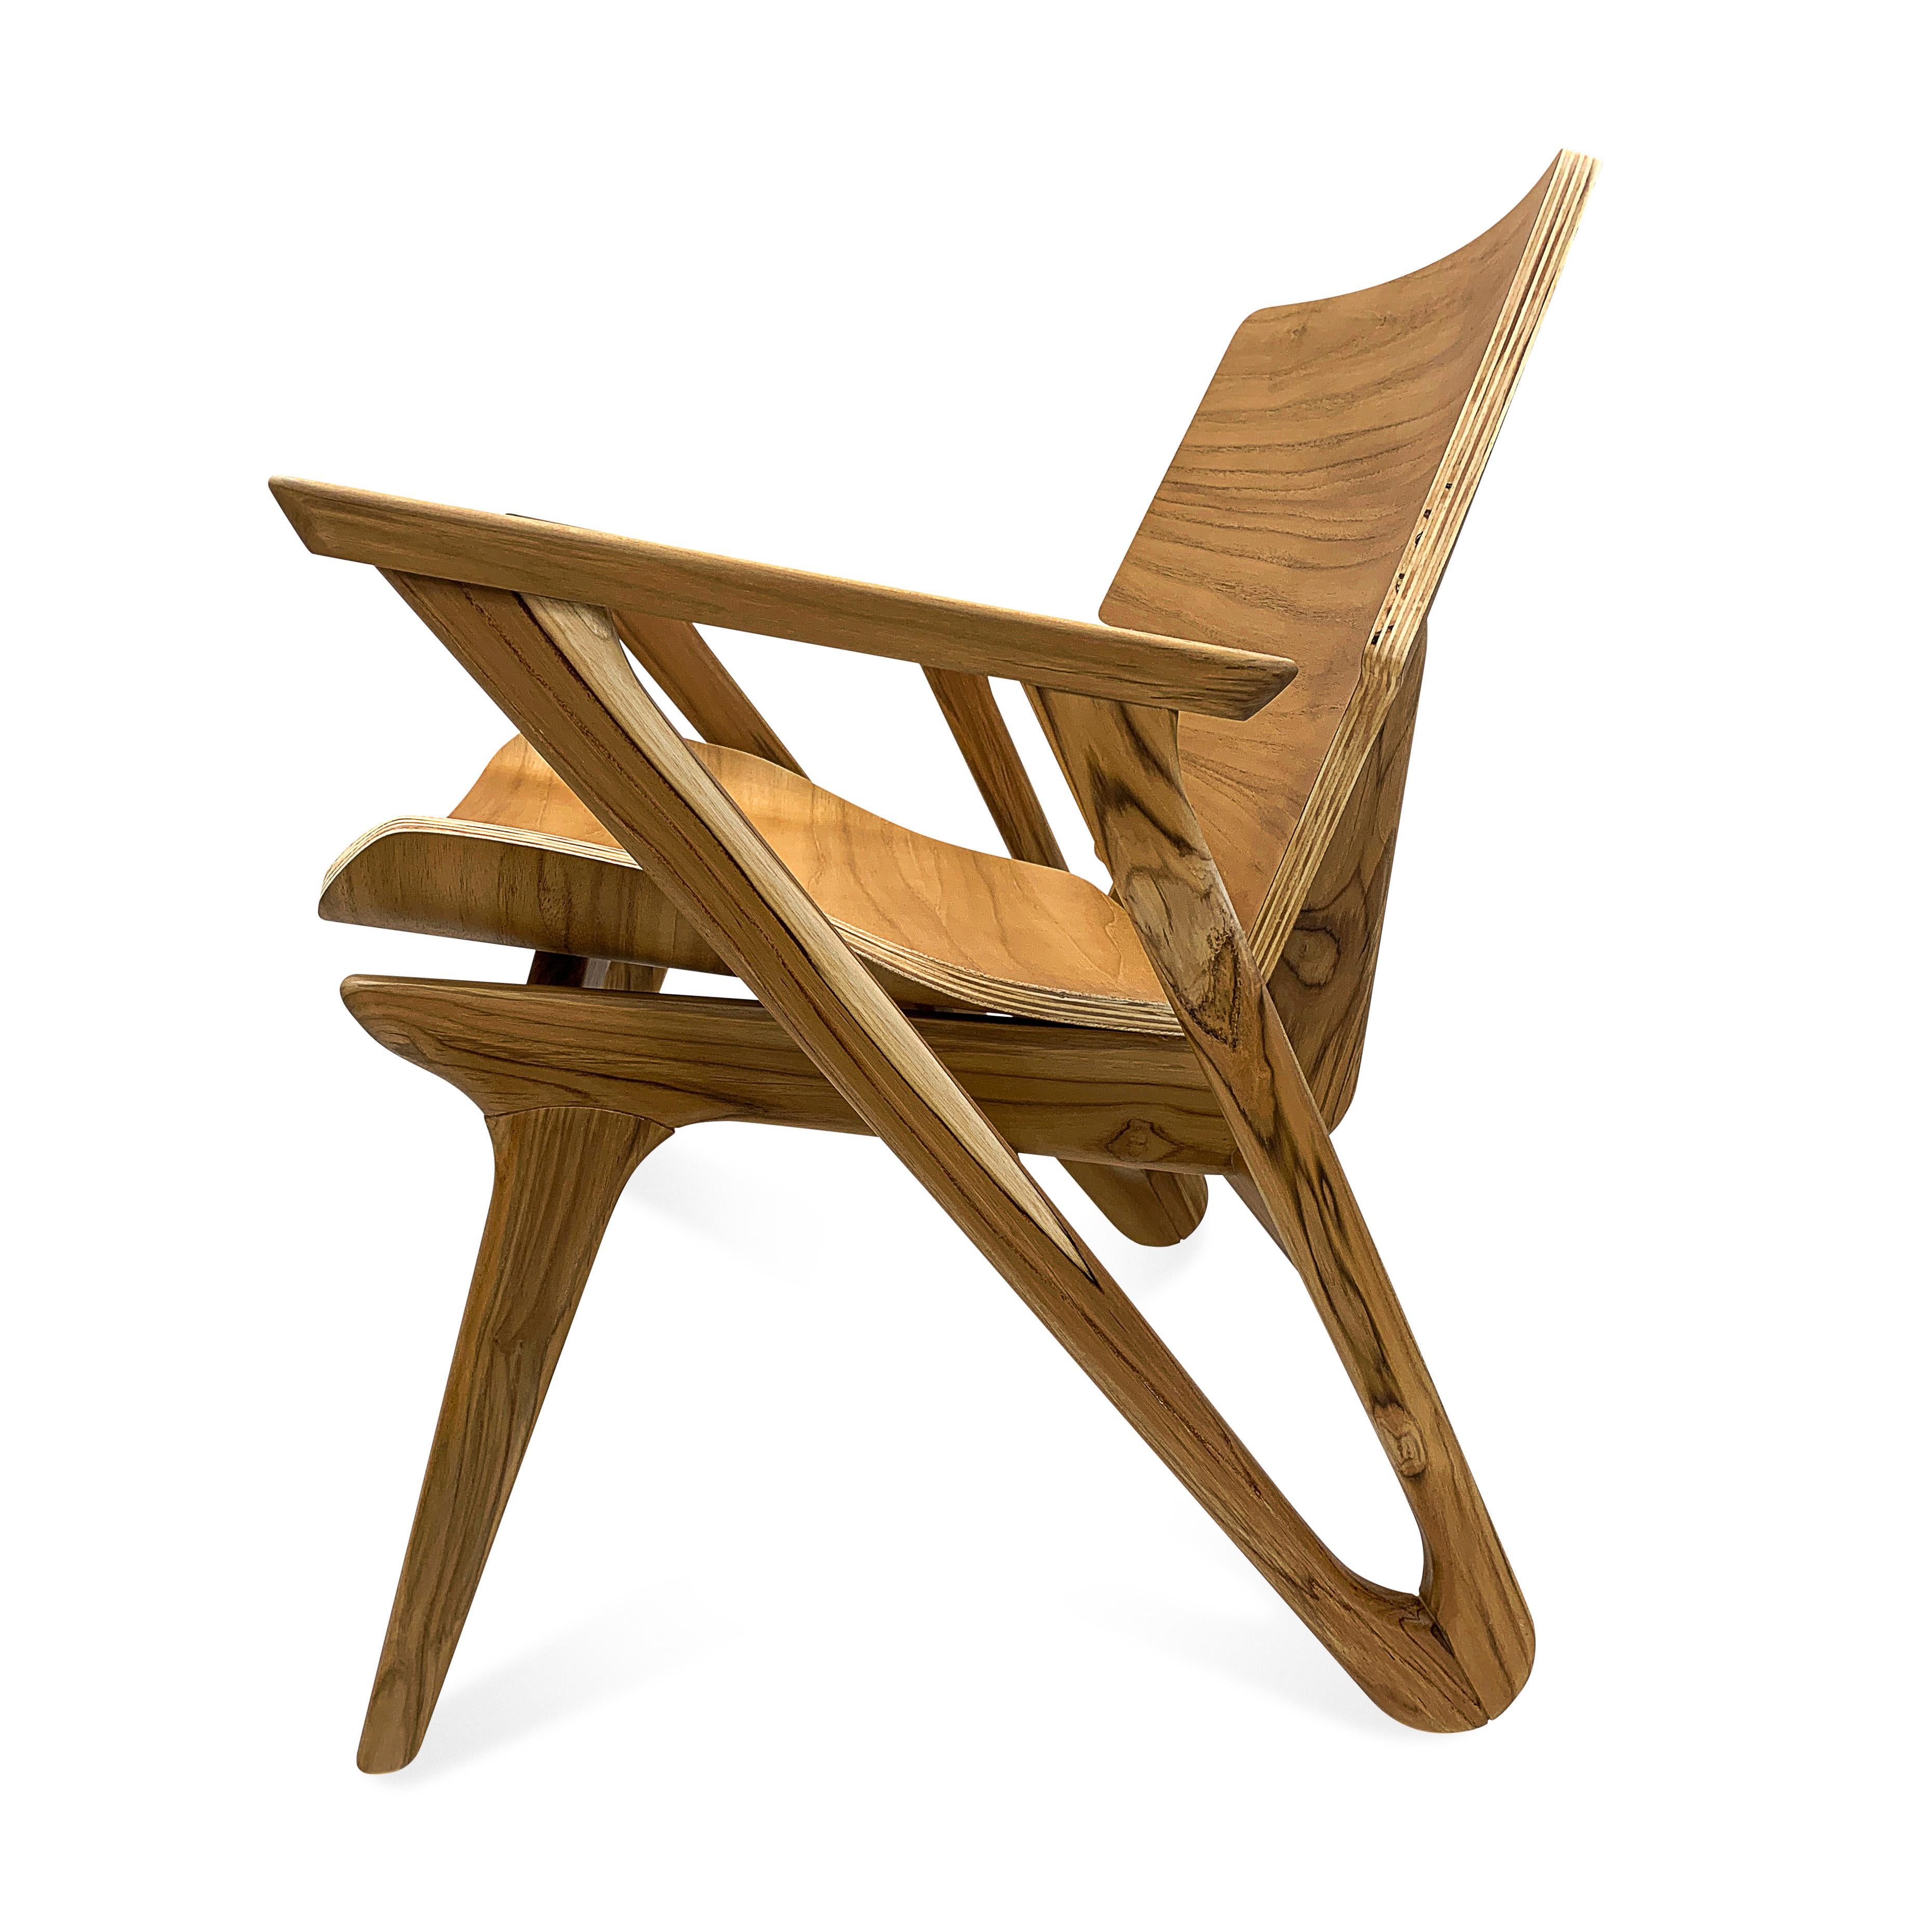 Dieser minimalistische Velo-Sessel mit geformter Sitzfläche und Rückenlehne zeichnet sich durch ein einfaches und stromlinienförmiges Design aus, mit geometrischen Formen und geschwungenen Sitzflächen mit weichen und starken Ecken, die Schlichtheit